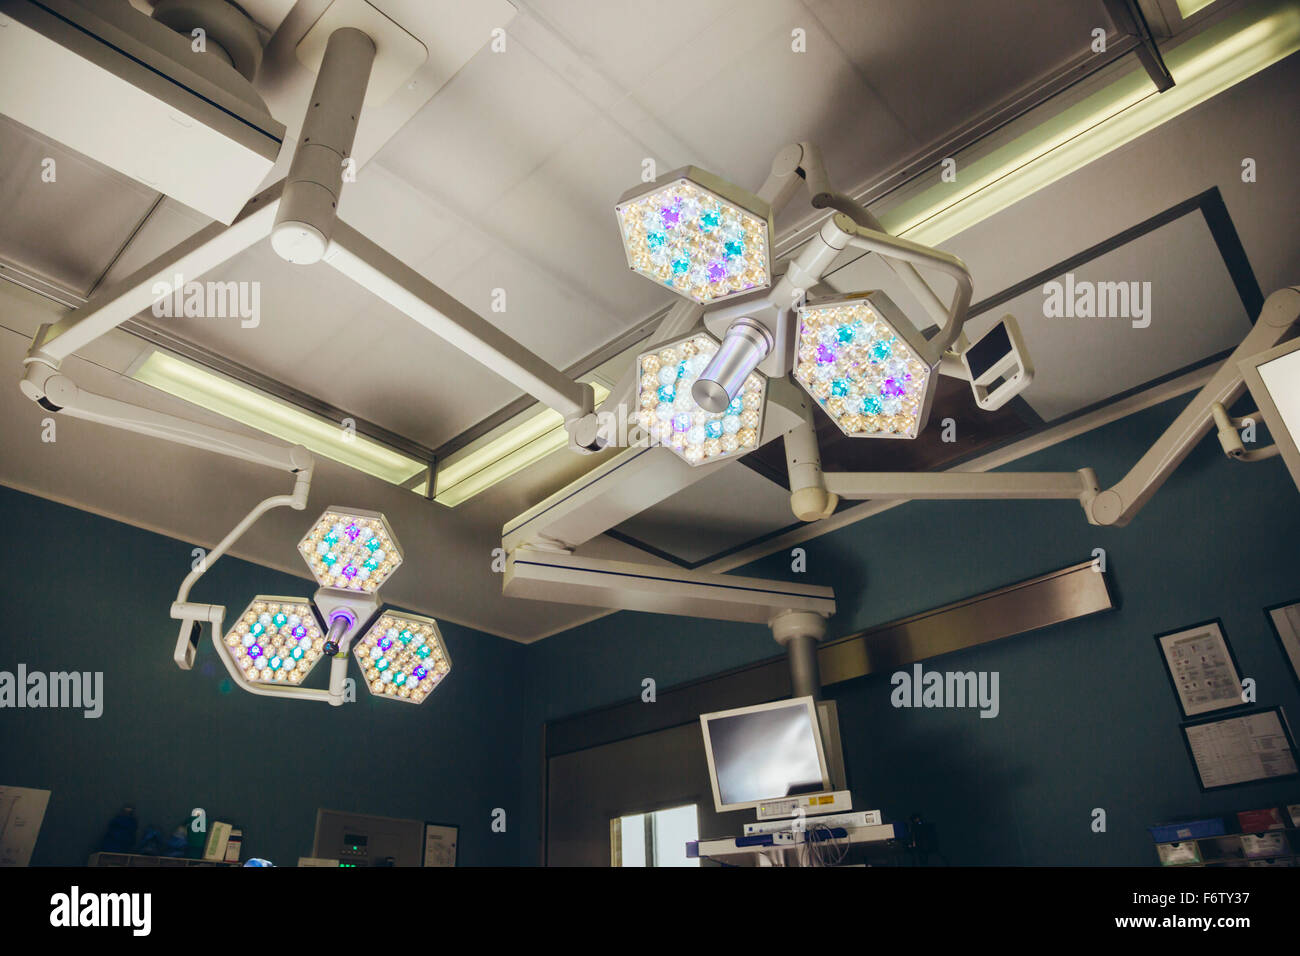 Lumières lumineuses au-dessus de table de salle d'opération Banque D'Images